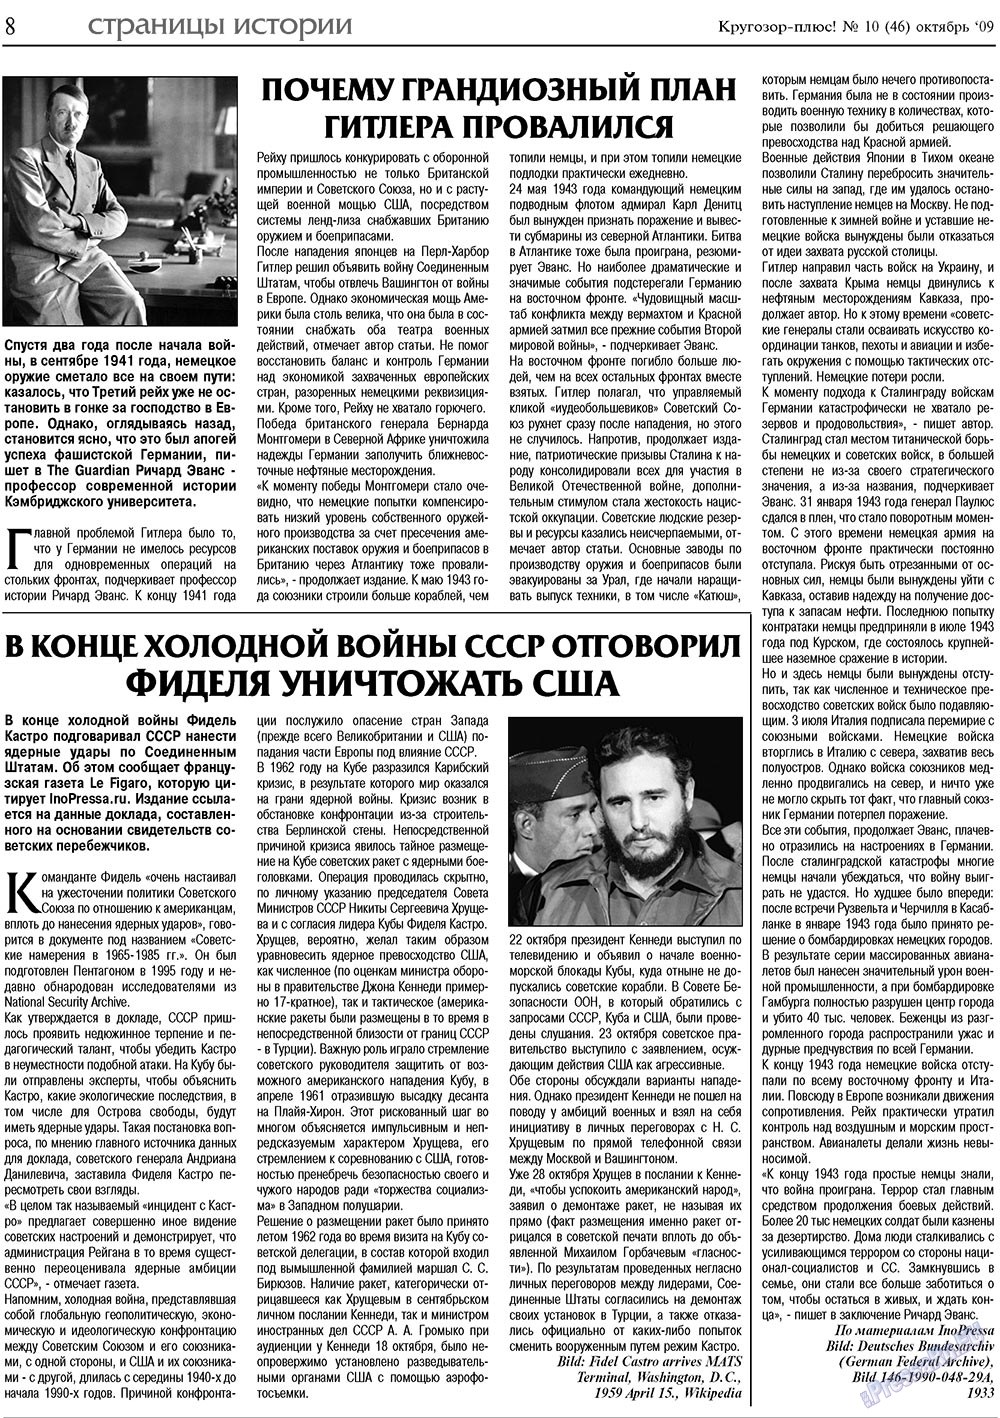 Кругозор плюс!, газета. 2009 №10 стр.8